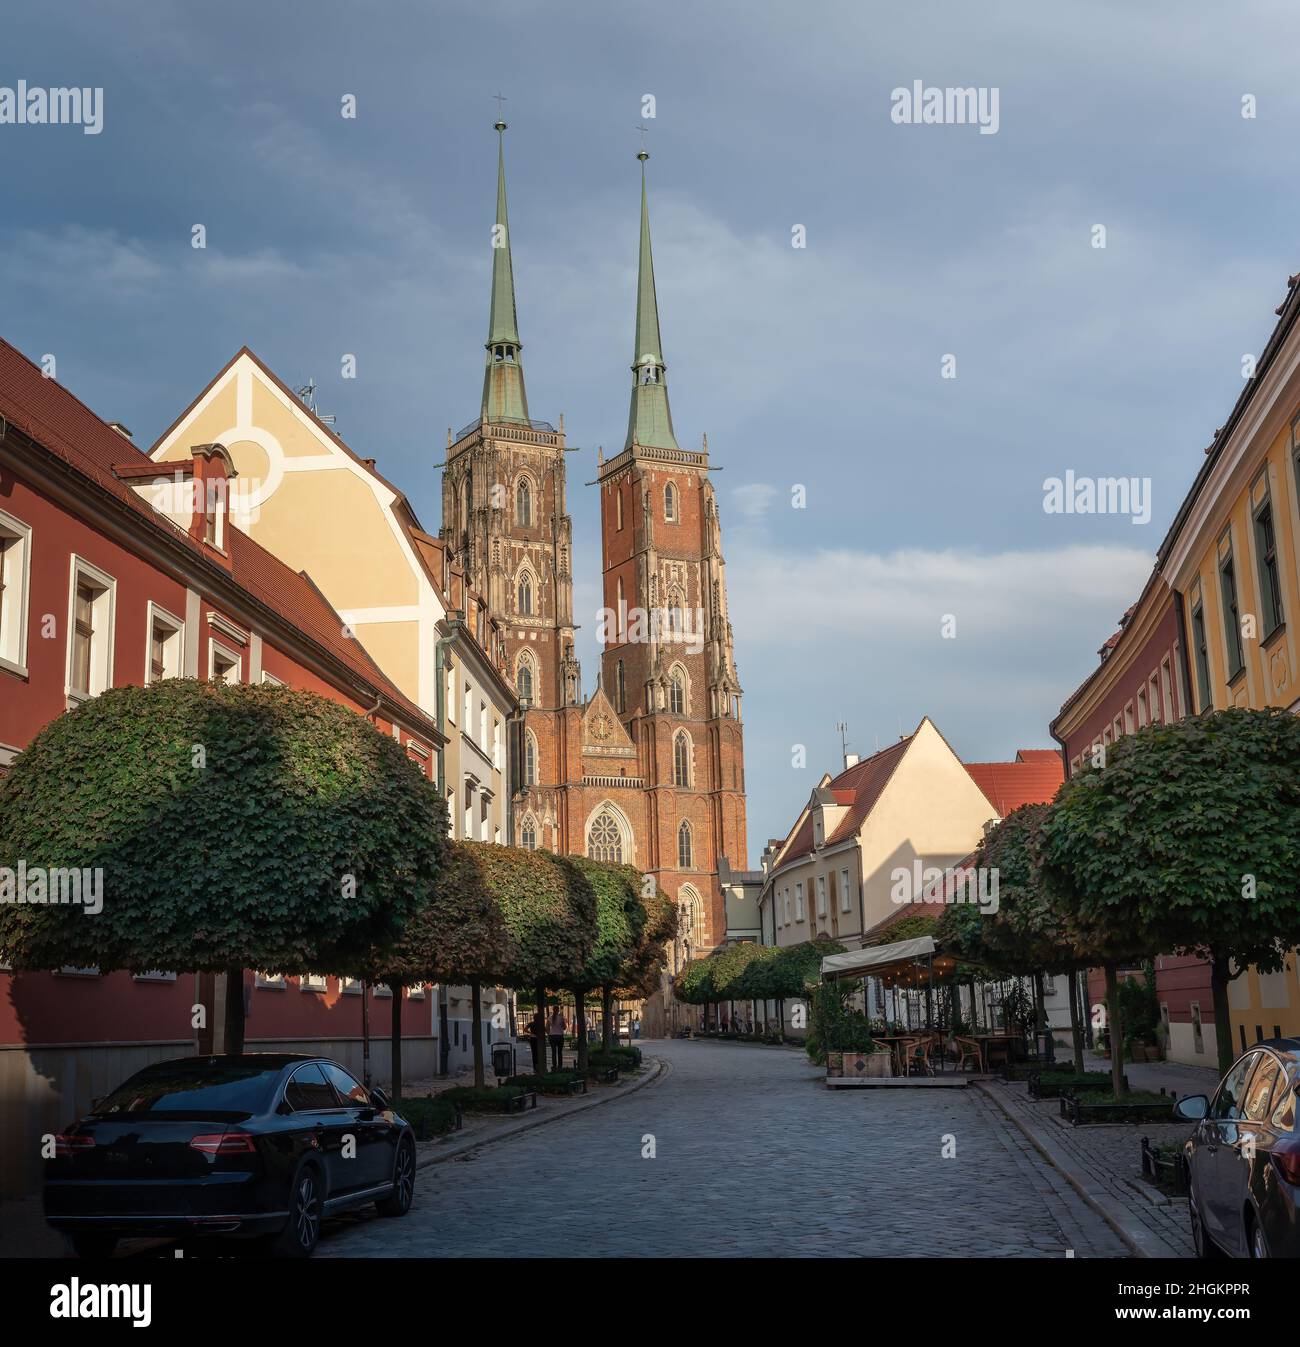 Cathédrale Saint-Jean-Baptiste à l'île de la Cathédrale (Ostrow Tumski) - Wroclaw, Pologne Banque D'Images